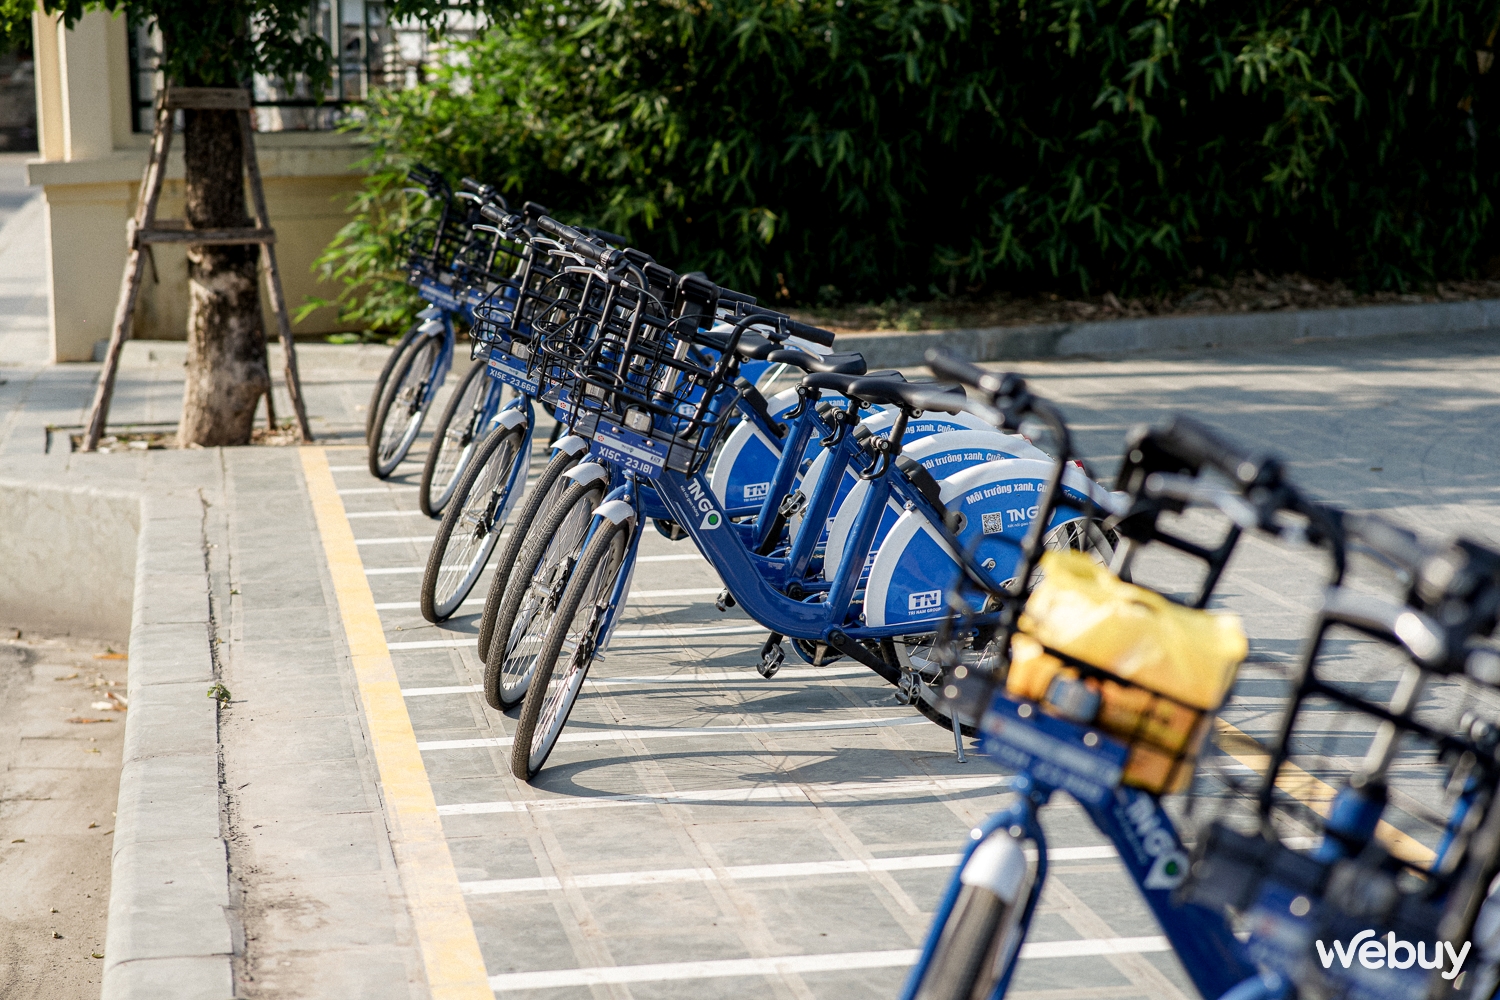 Thử thuê xe đạp TNGo ở Hải Phòng: Cước rẻ, đi vui, còn bất cập nhưng xứng đáng được nhân rộng - Ảnh 1.